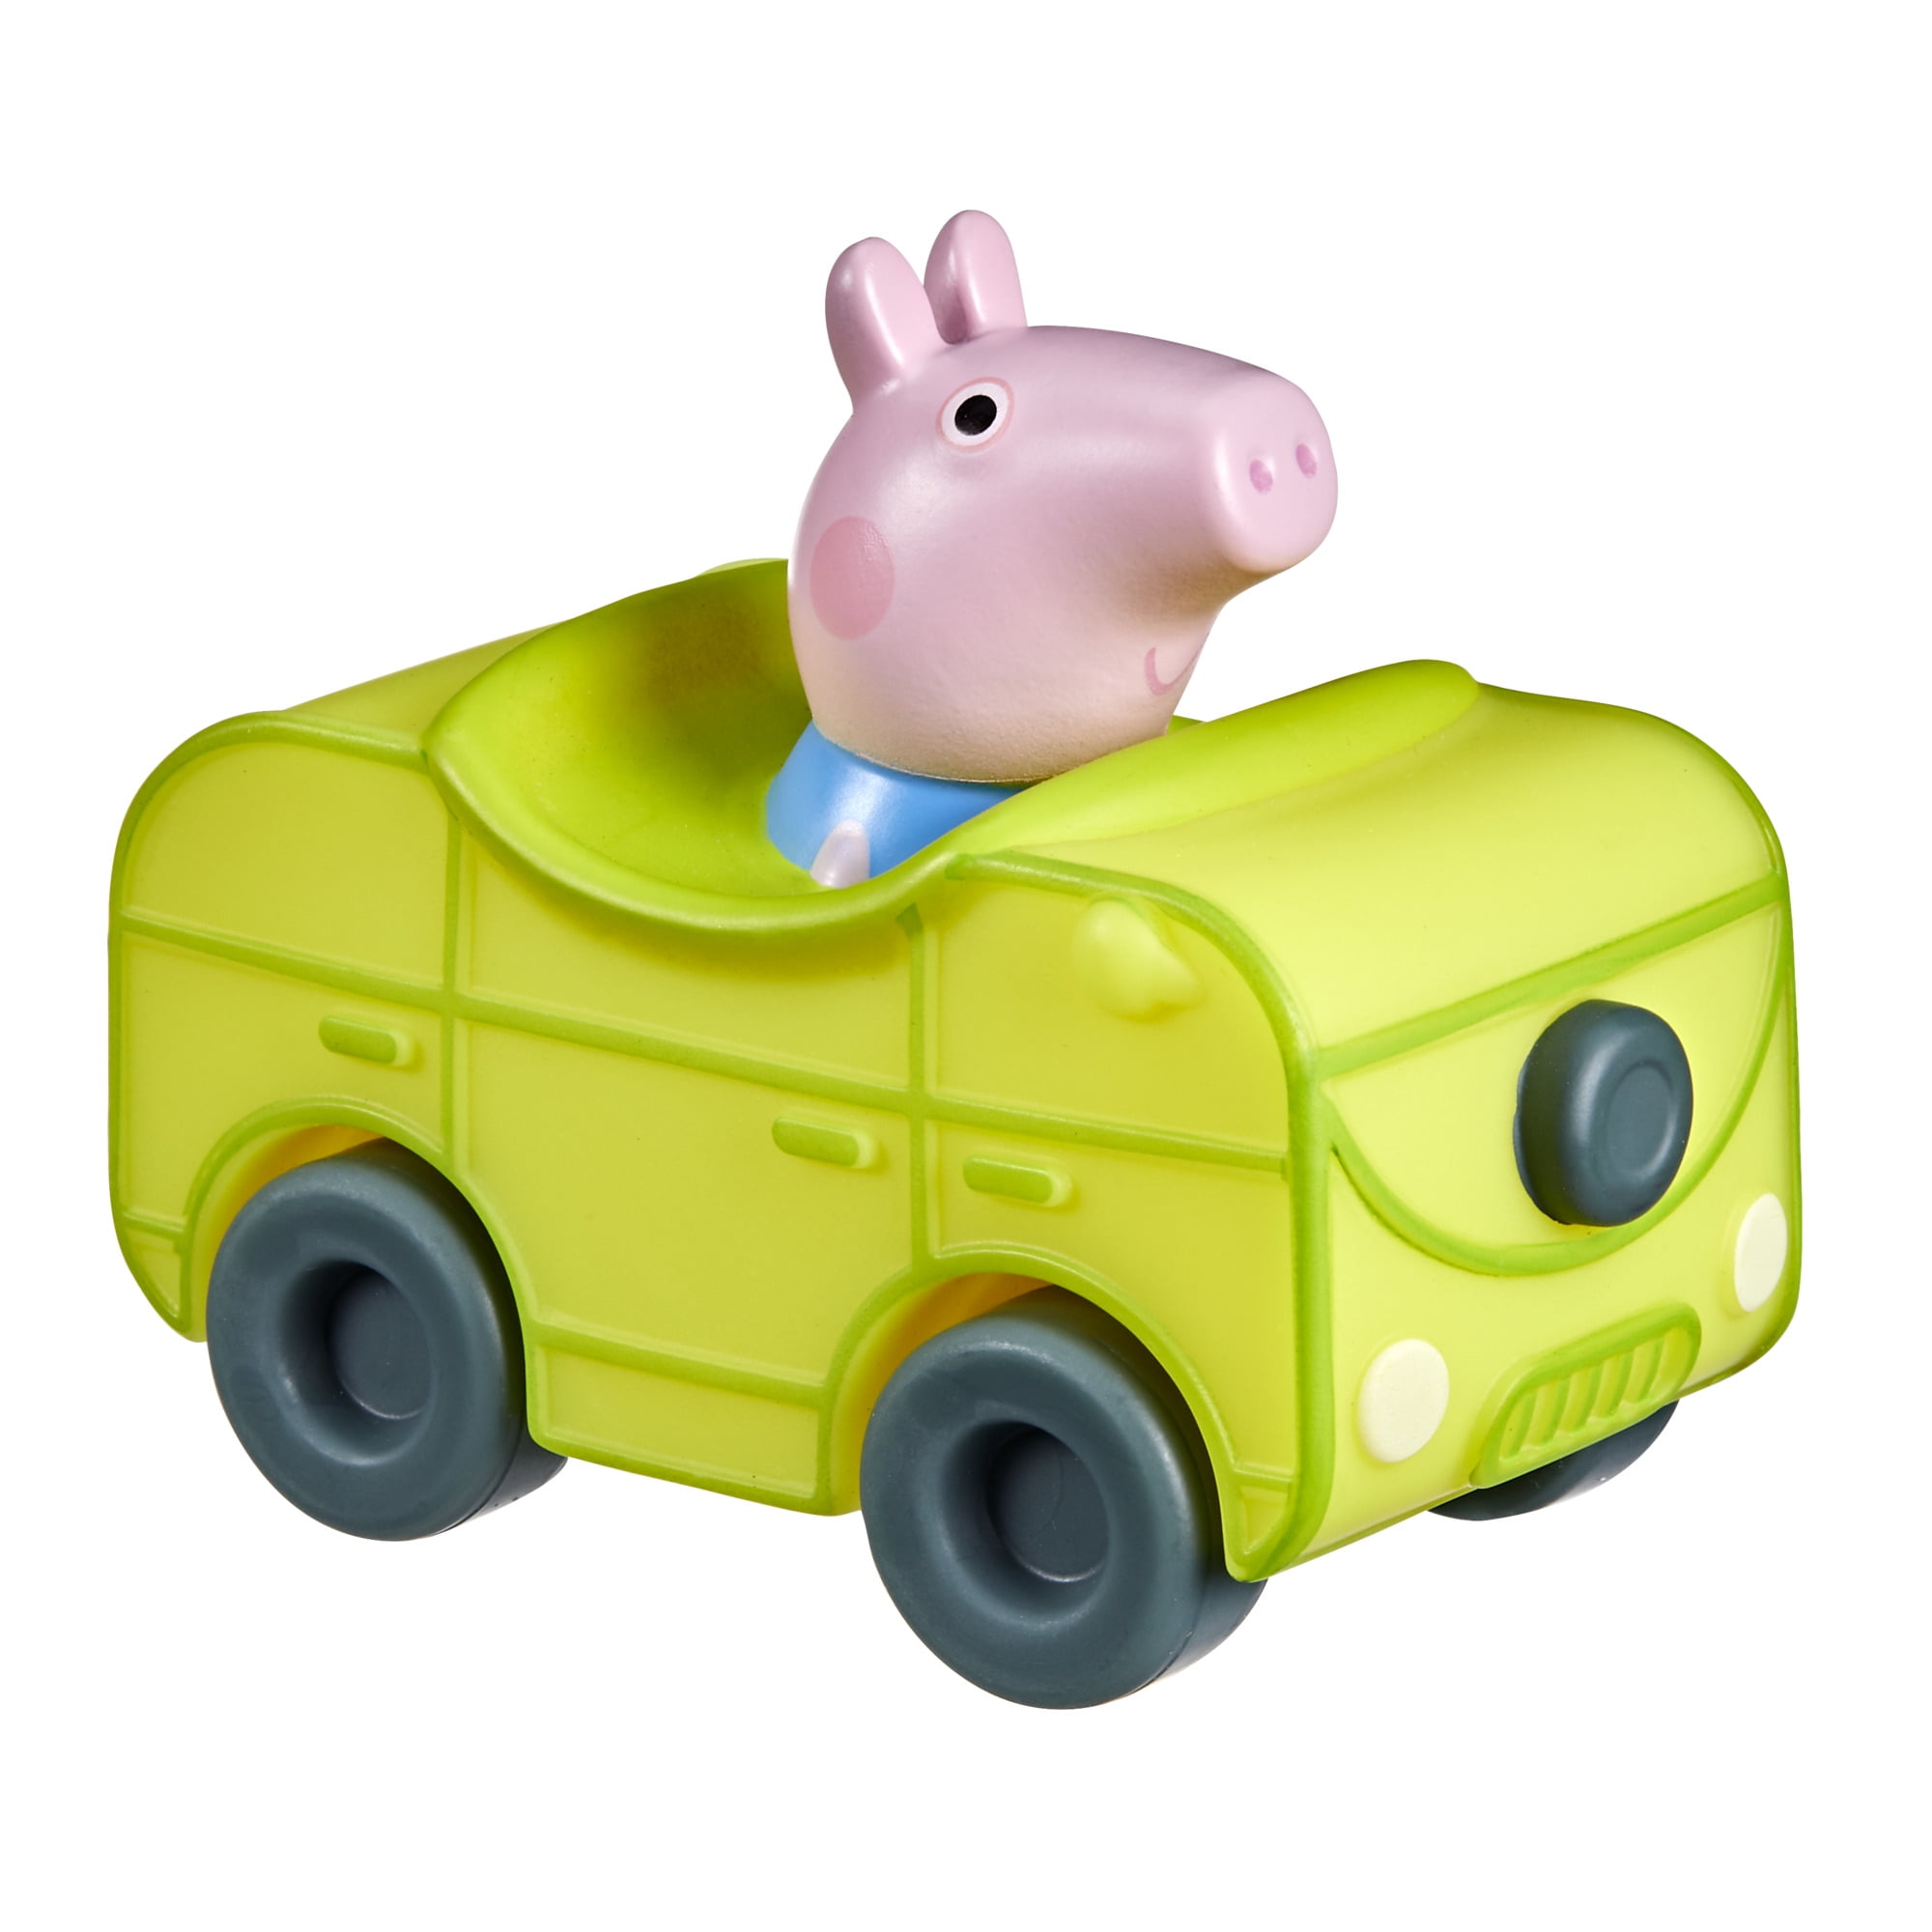 Peppa Pig Peppa's Adventures Peppa Pig Little Buggy Vehicle (George Pig) -  